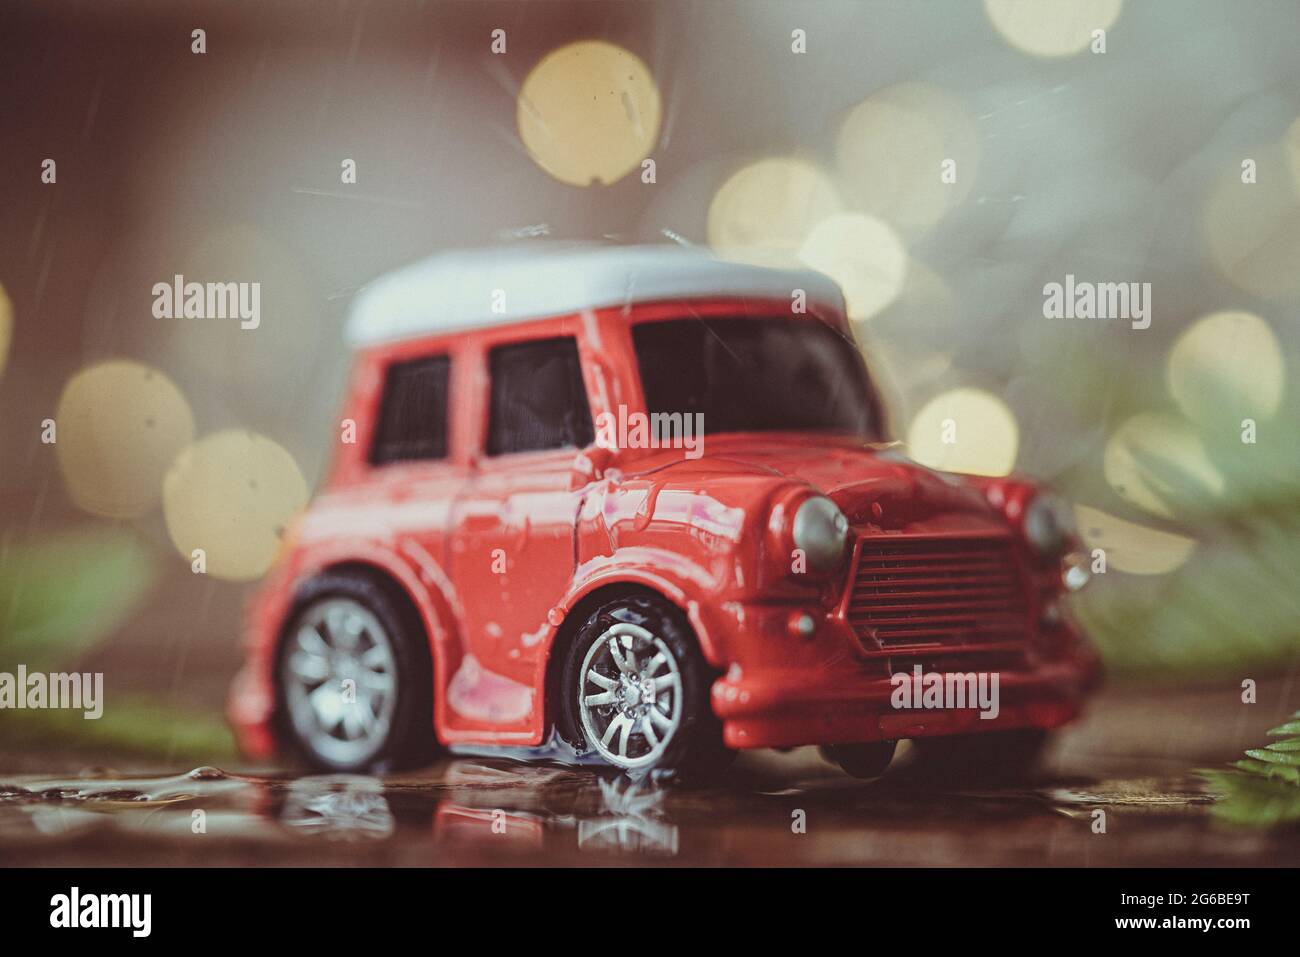 Nahaufnahme eines roten Mini-Spielzeugautos auf einem Tisch Stockfoto